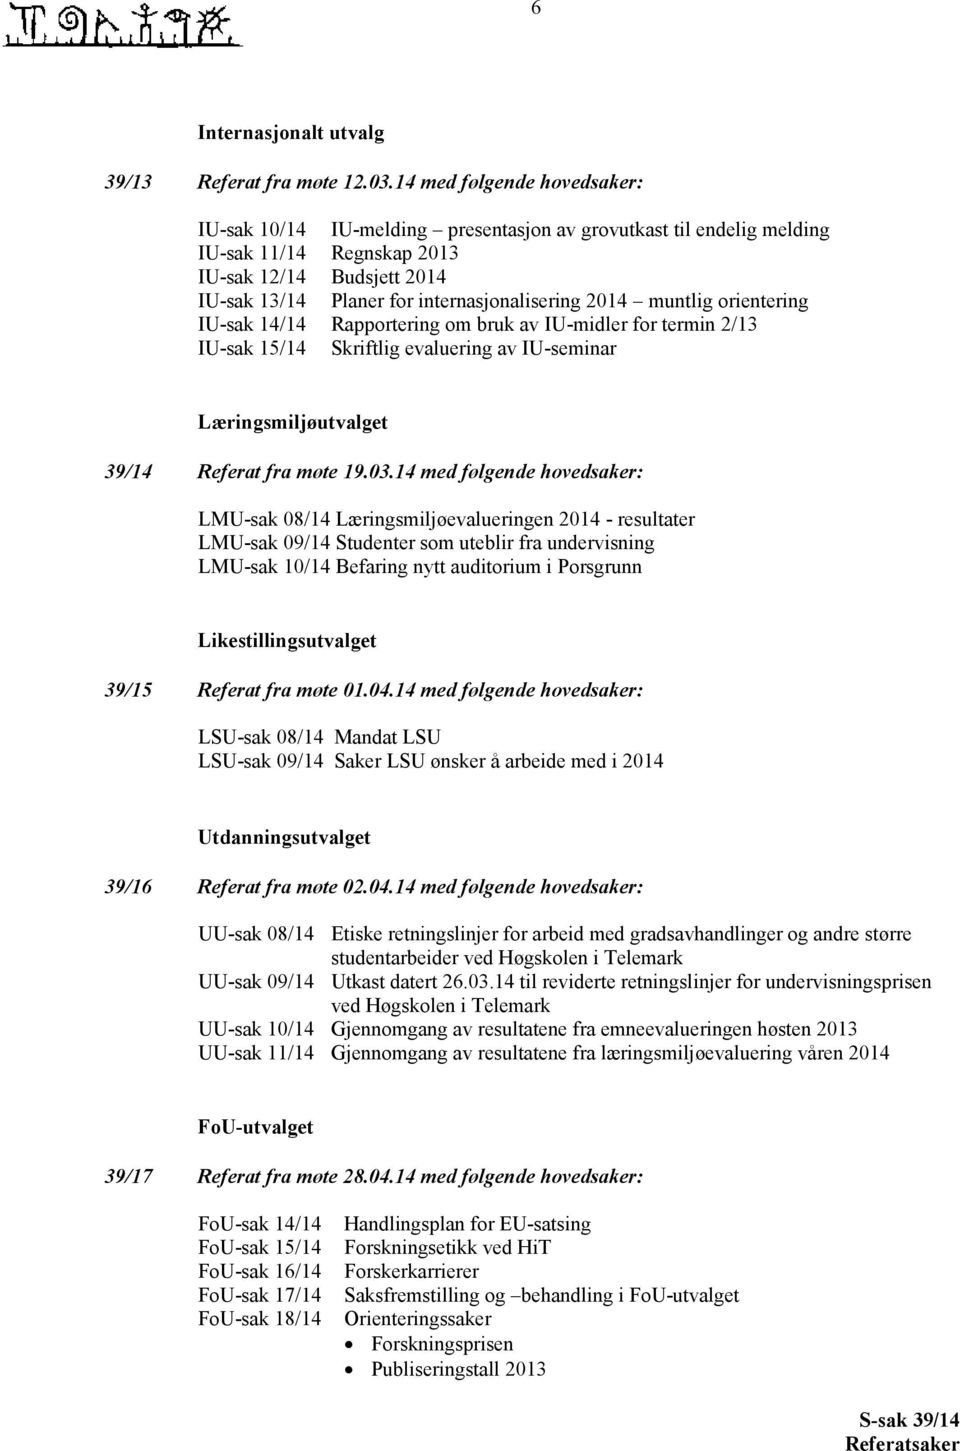 2014 muntlig orientering IU-sak 14/14 Rapportering om bruk av IU-midler for termin 2/13 IU-sak 15/14 Skriftlig evaluering av IU-seminar Læringsmiljøutvalget 39/14 Referat fra møte 19.03.